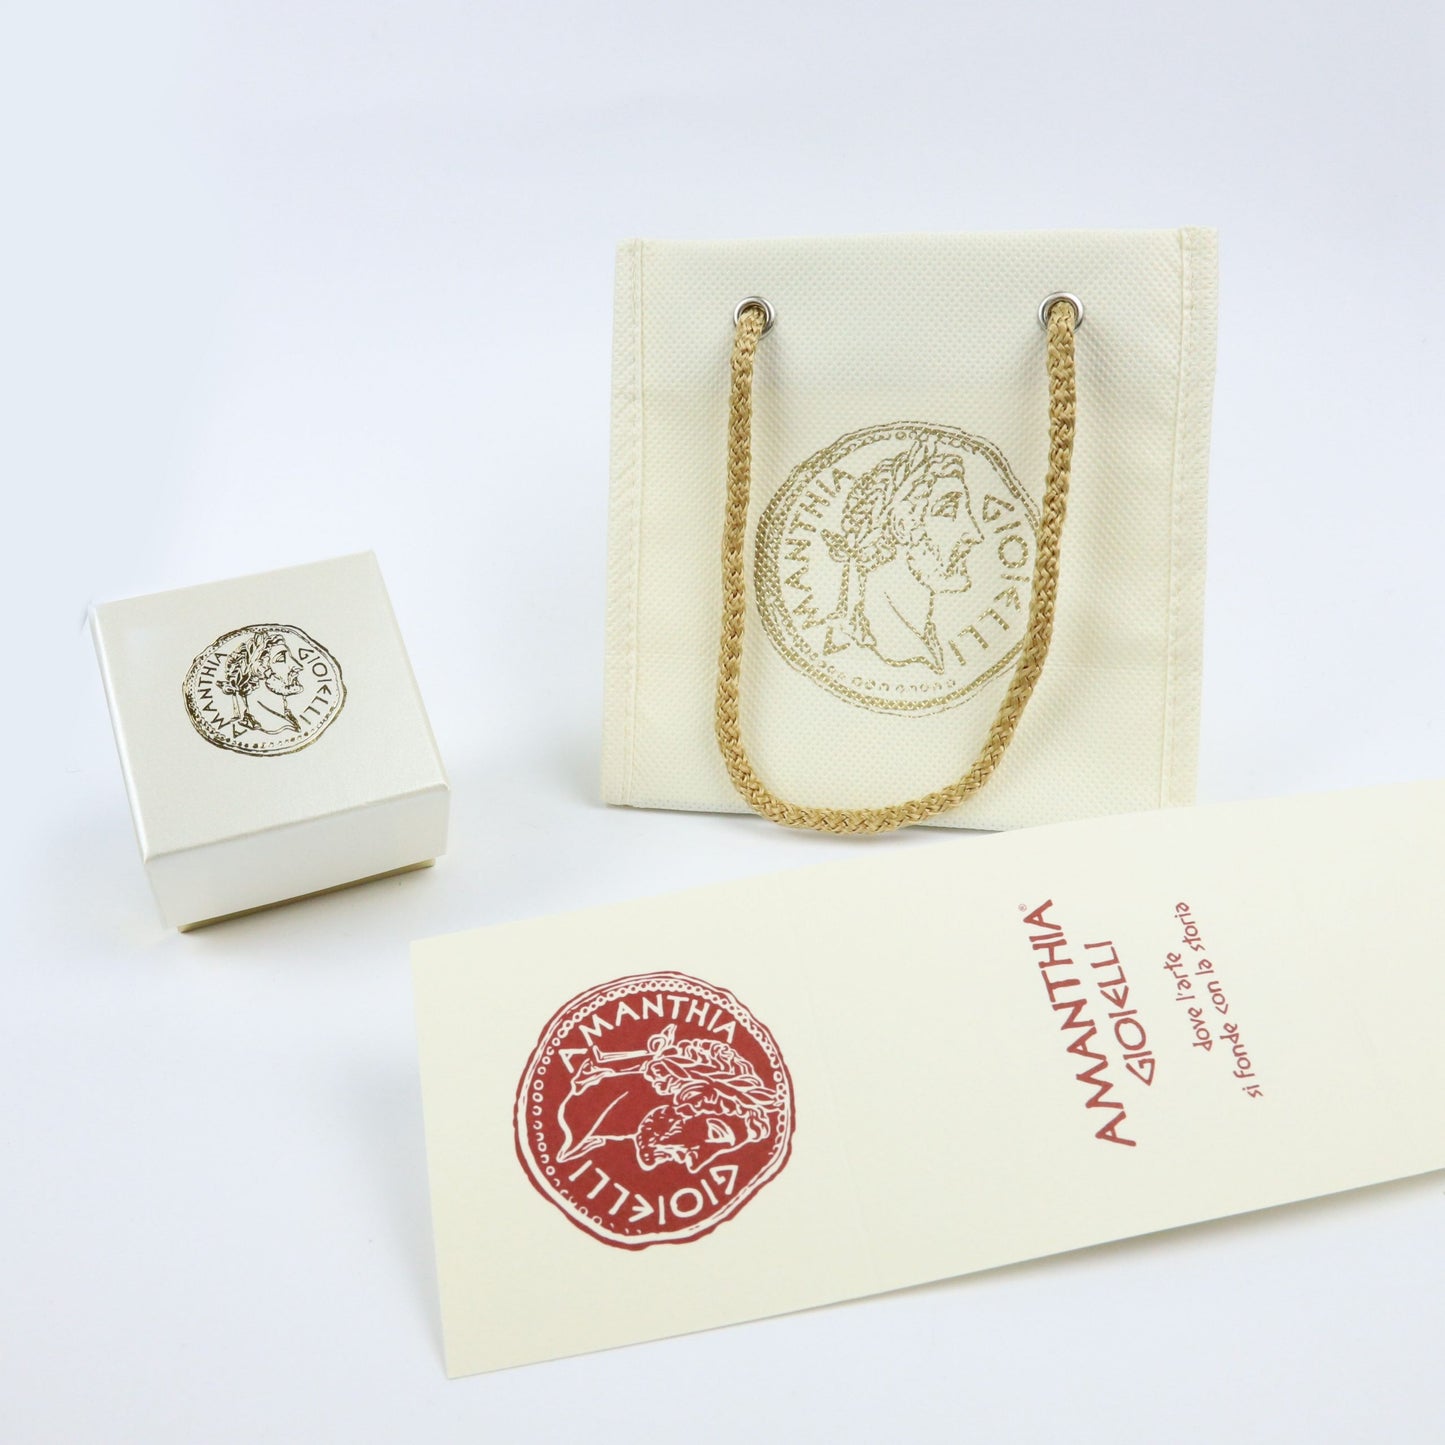 Collana Pasta Corallo con Moneta d’epoca in argento 925 - CP.19.50  Amanthia   